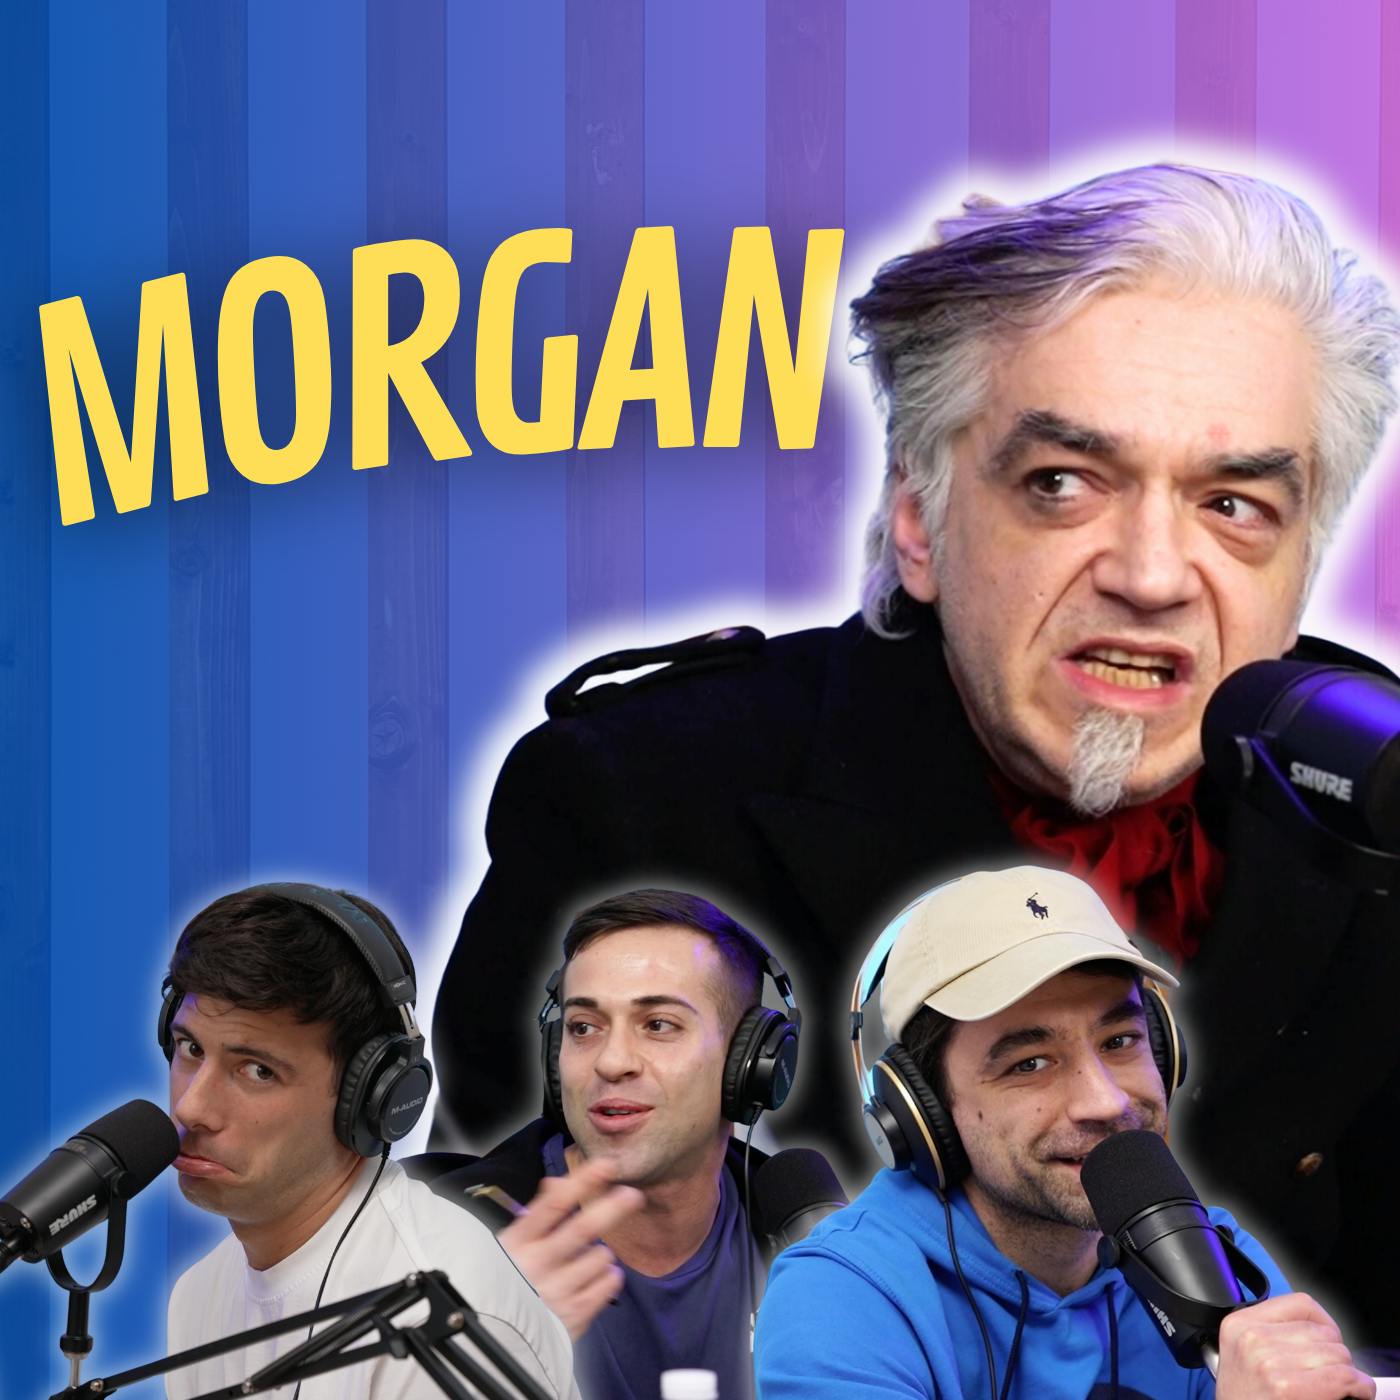 "VORREI SOLO ESSERE CAPITO" - Con Morgan